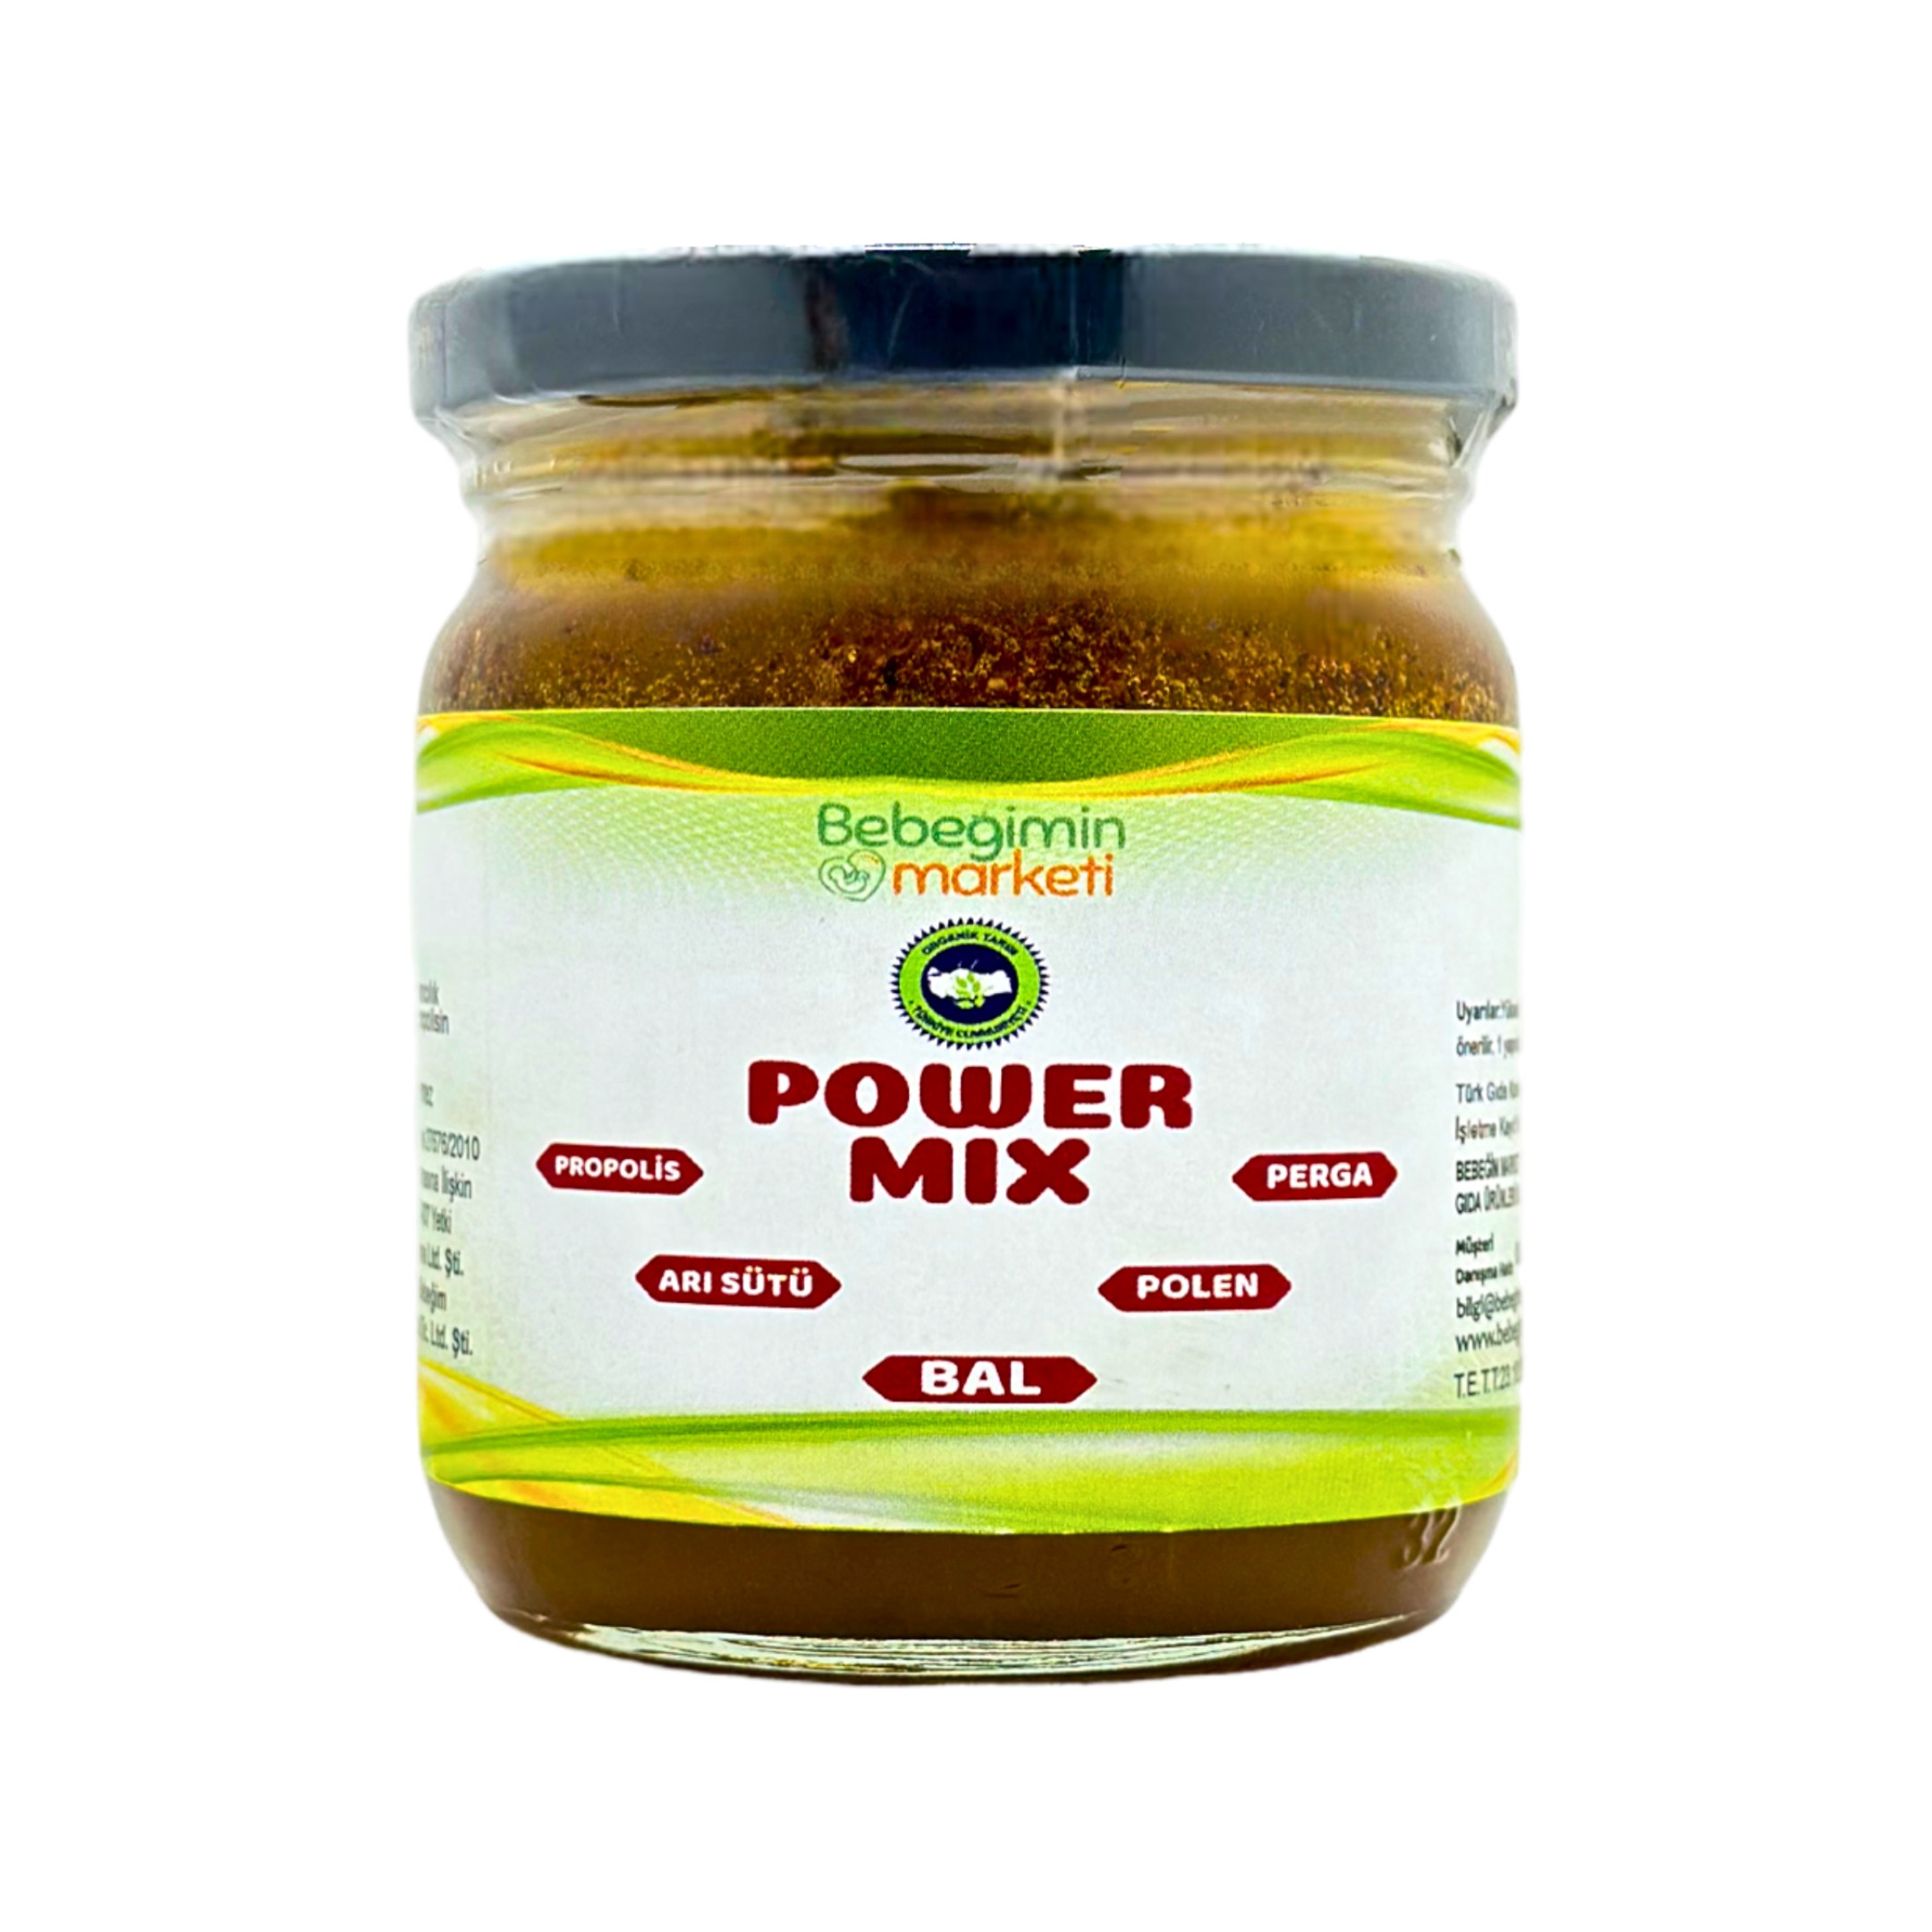 Power Mix 5'li  Güçlü Karışım 230 Gr (Bal+propolis+arı sütü+polen+arı ekmeği)